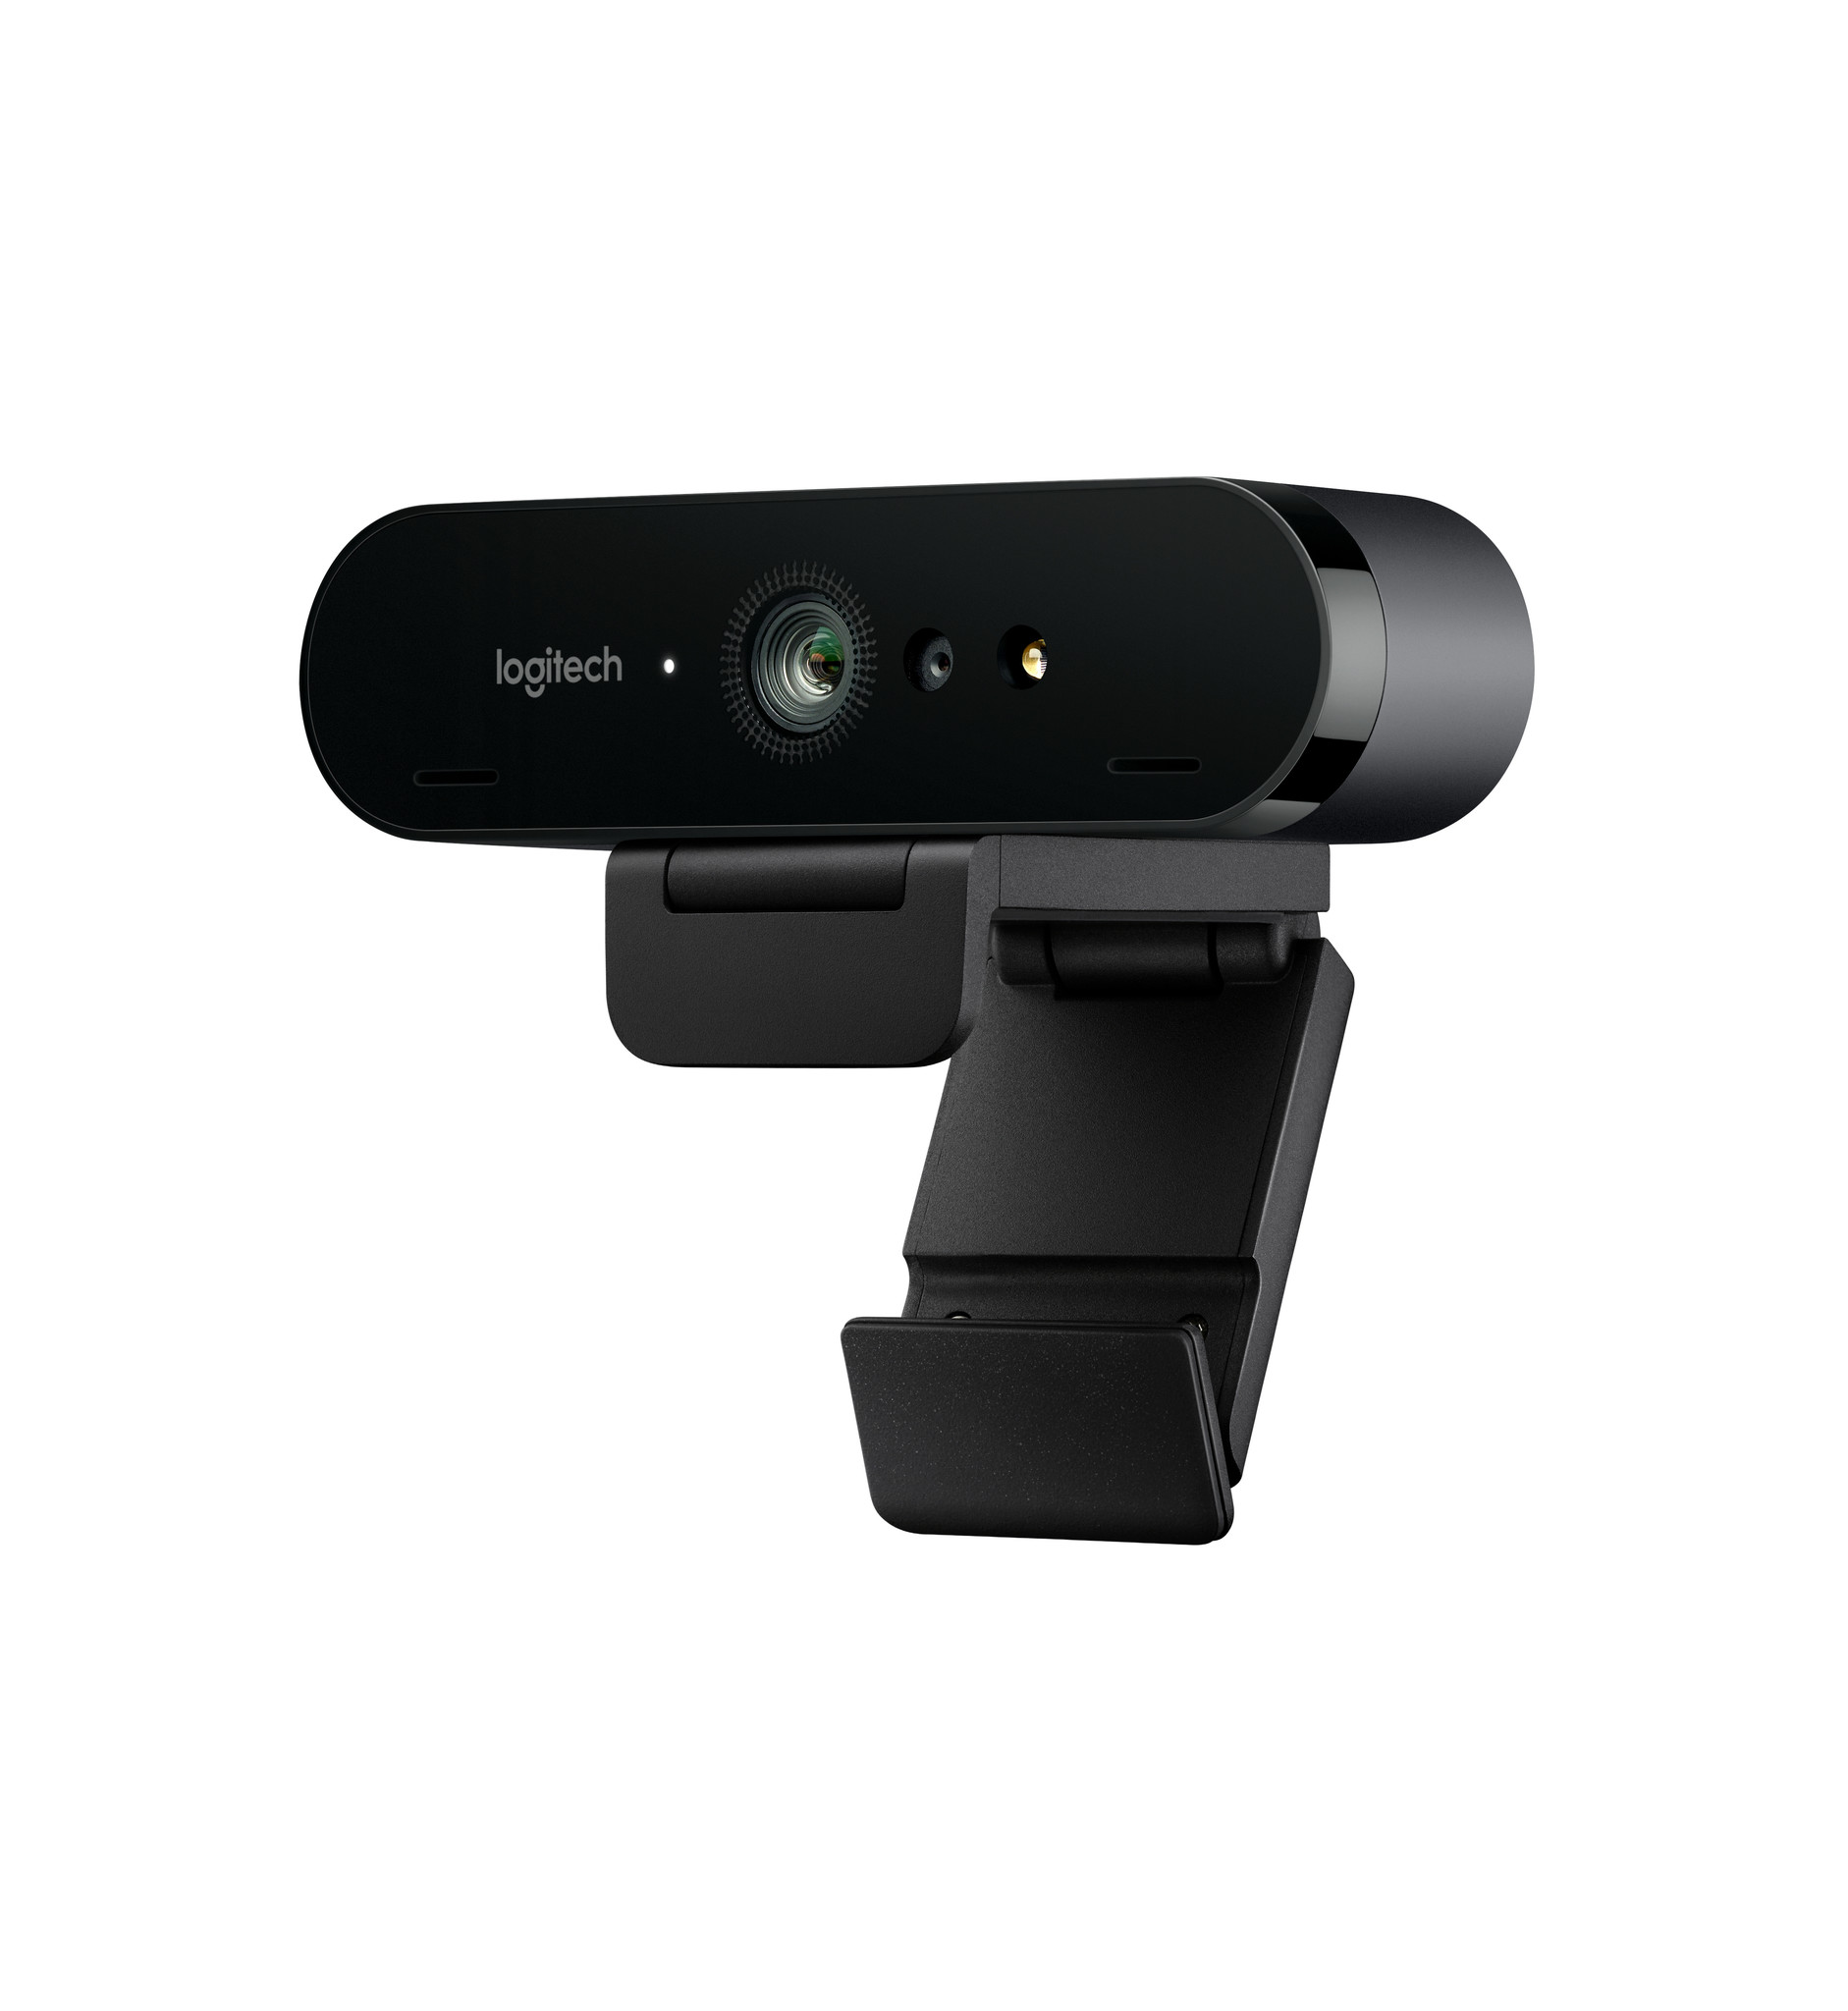 Ewell boog ontploffing Logitech Brio Ultra HD Pro 4K webcam kopen? - Beamerexpert